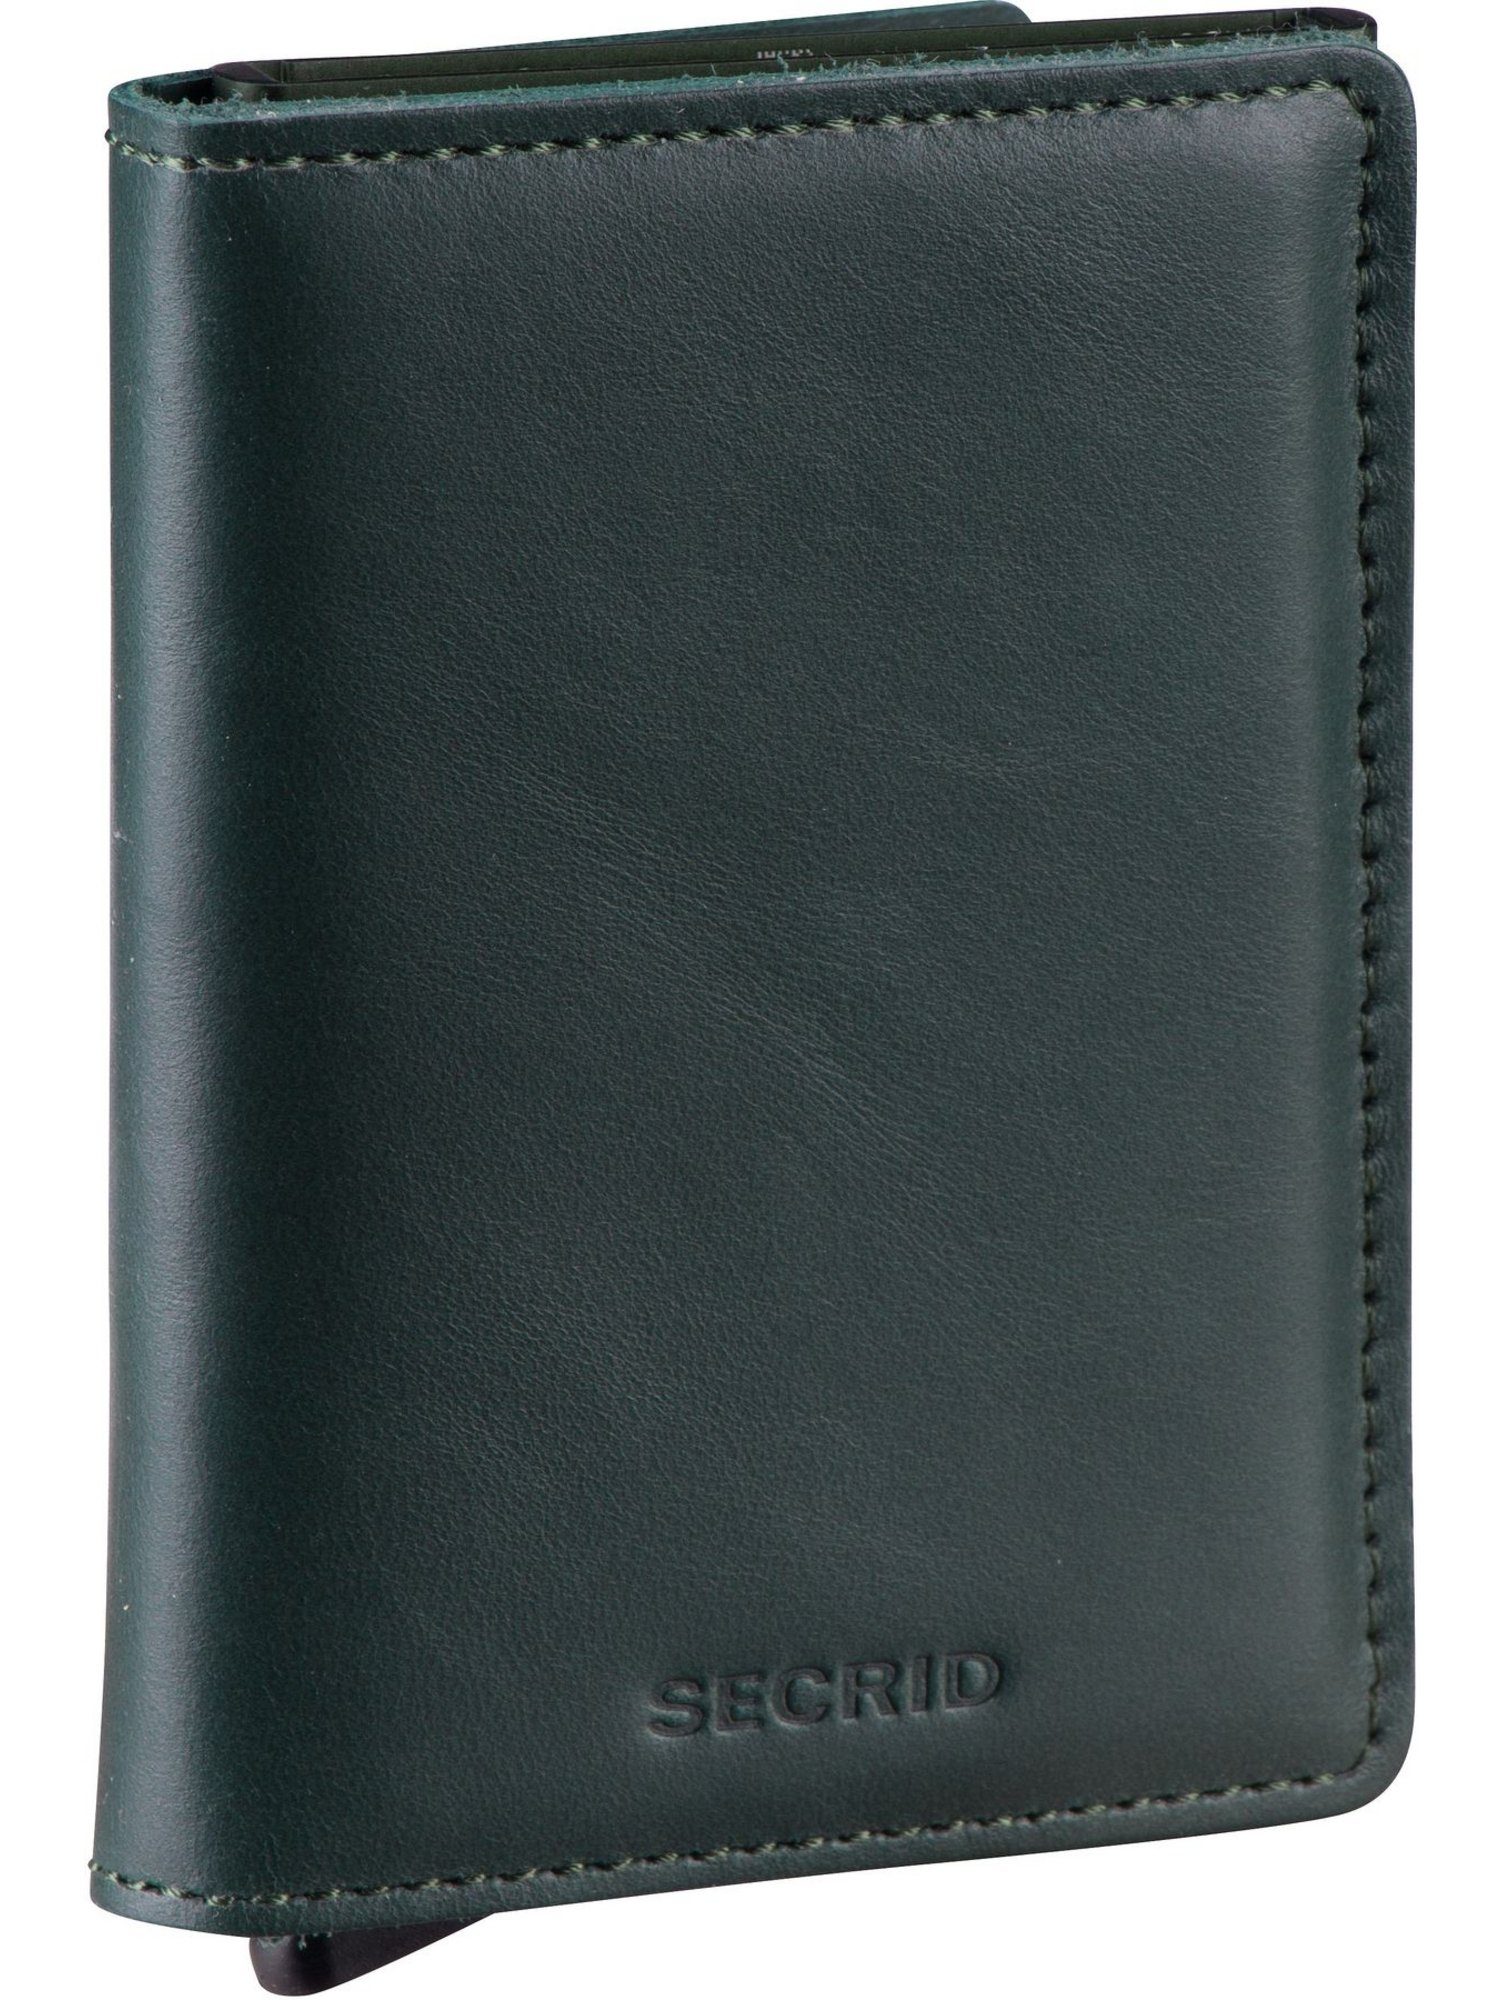 SECRID Brieftasche Slimwallet Original Green